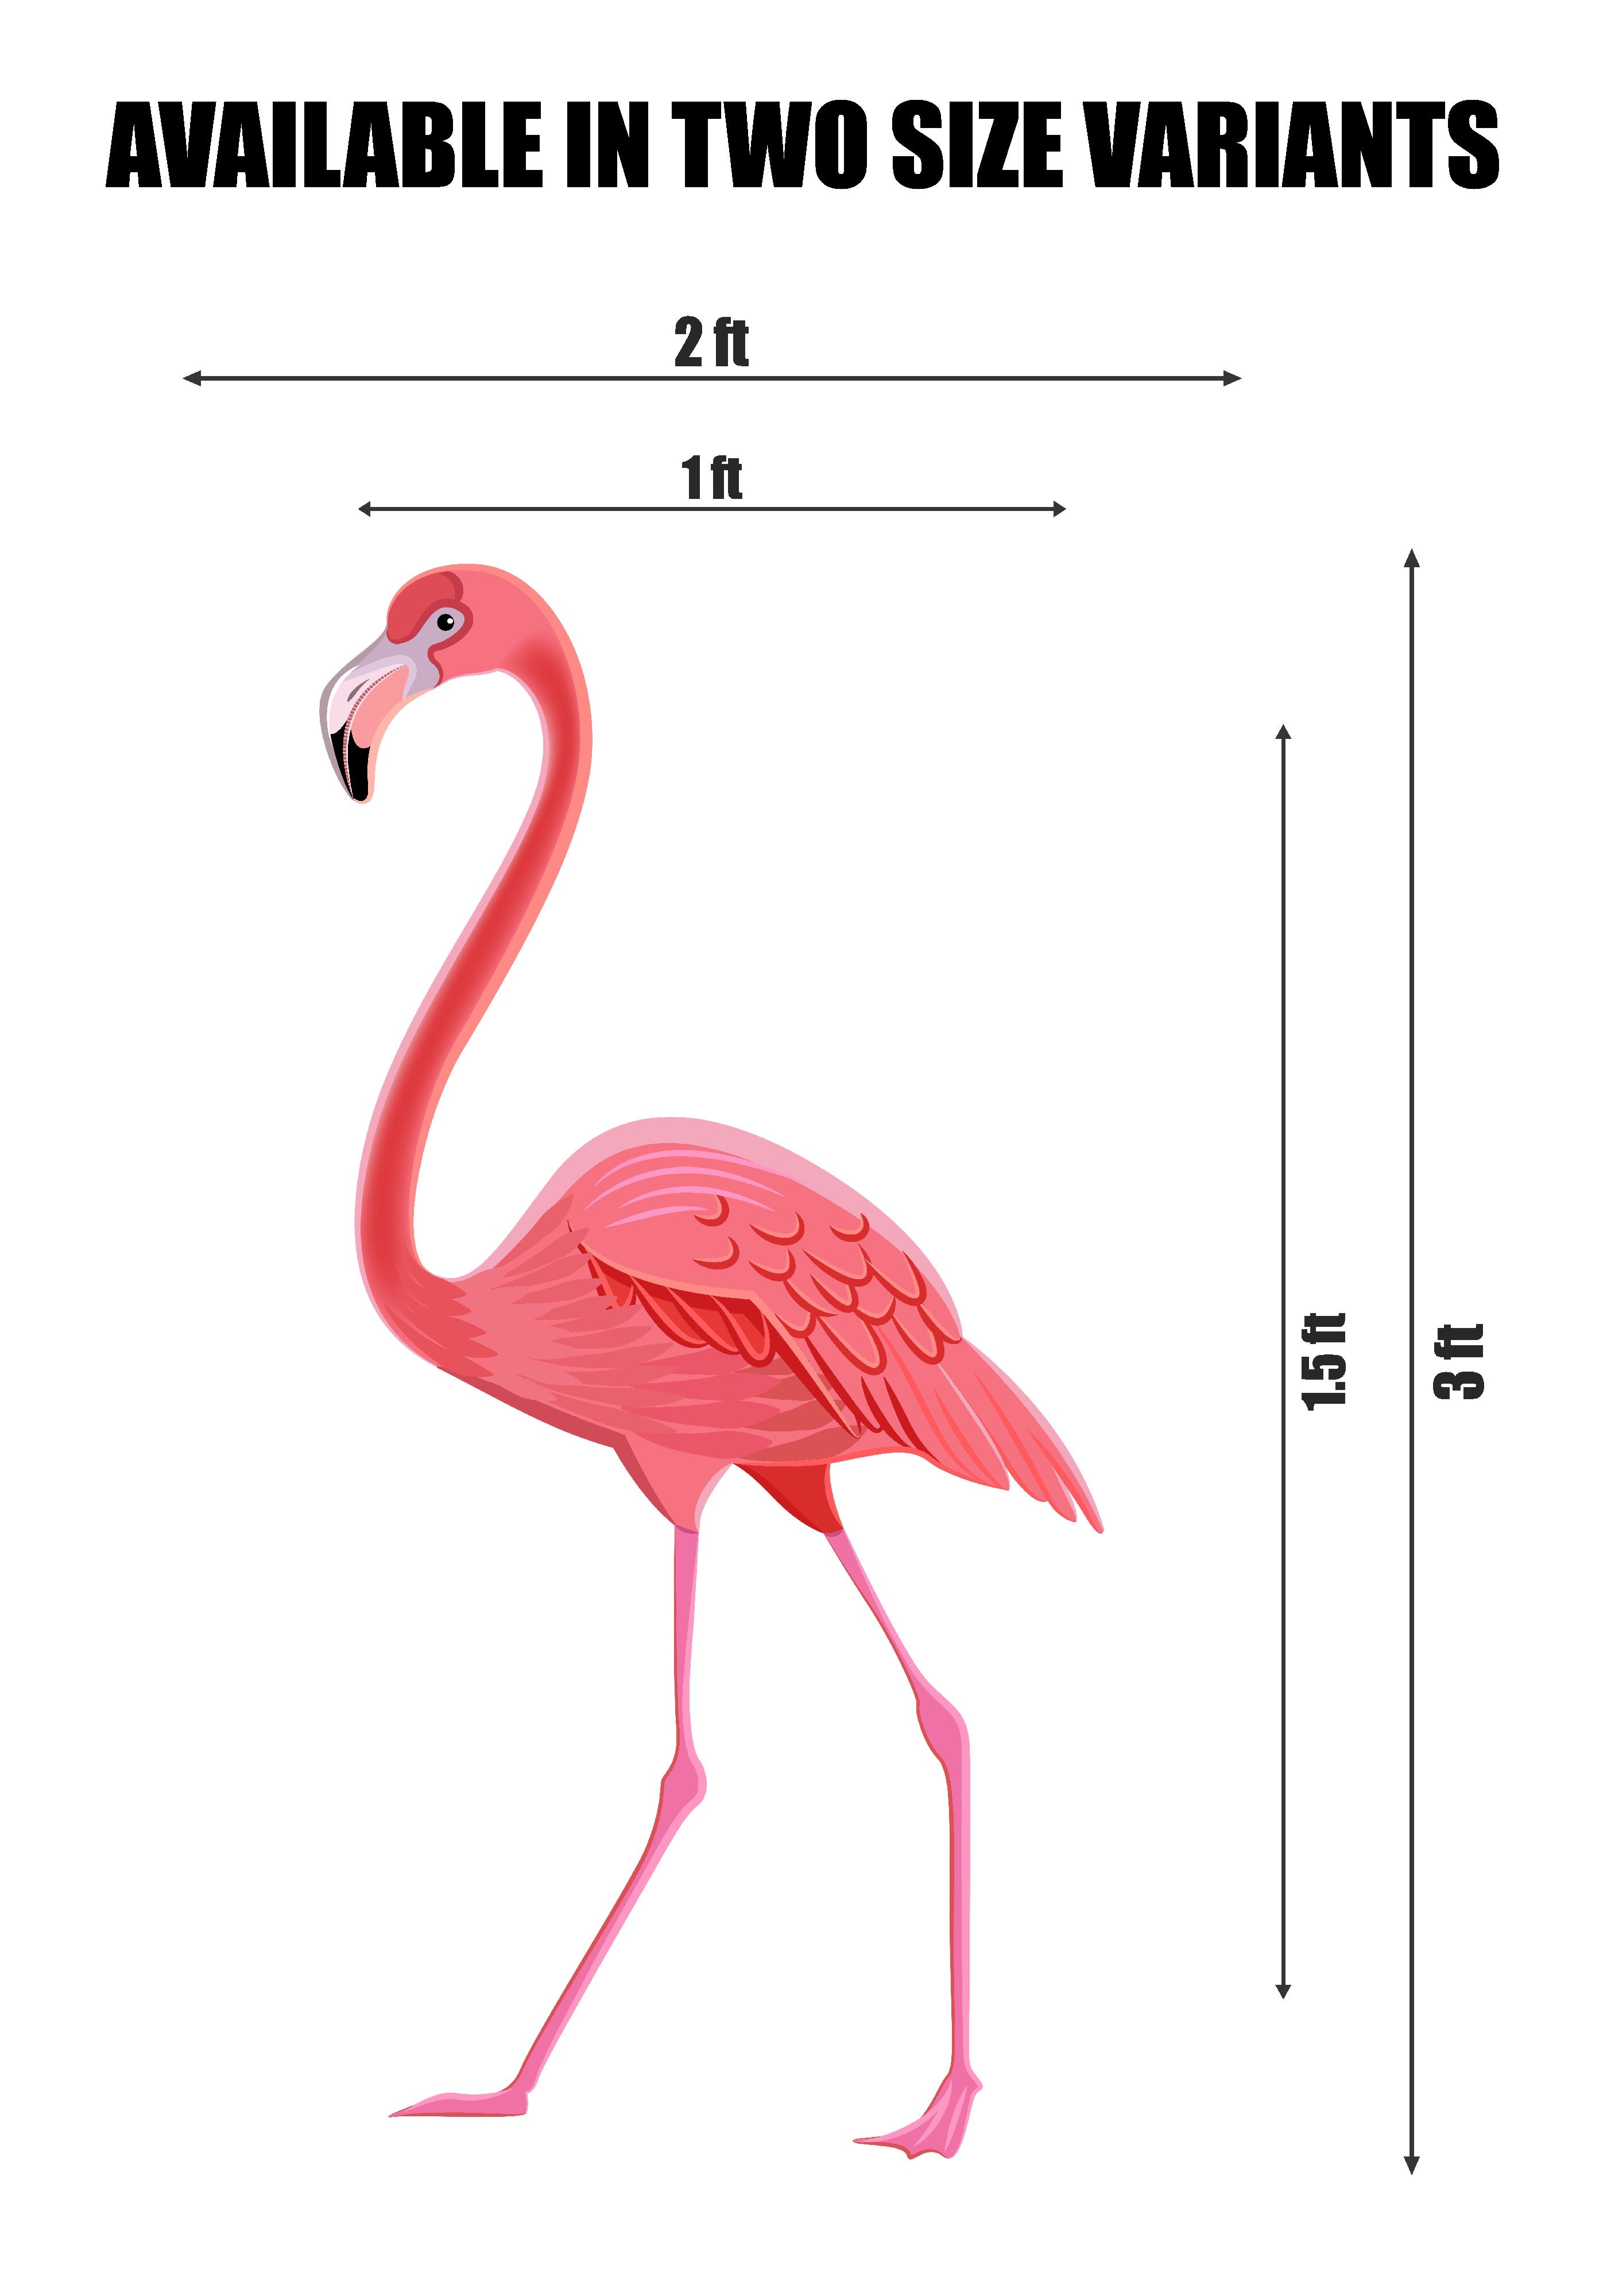 PSI Flamingo Theme Cutout - 06